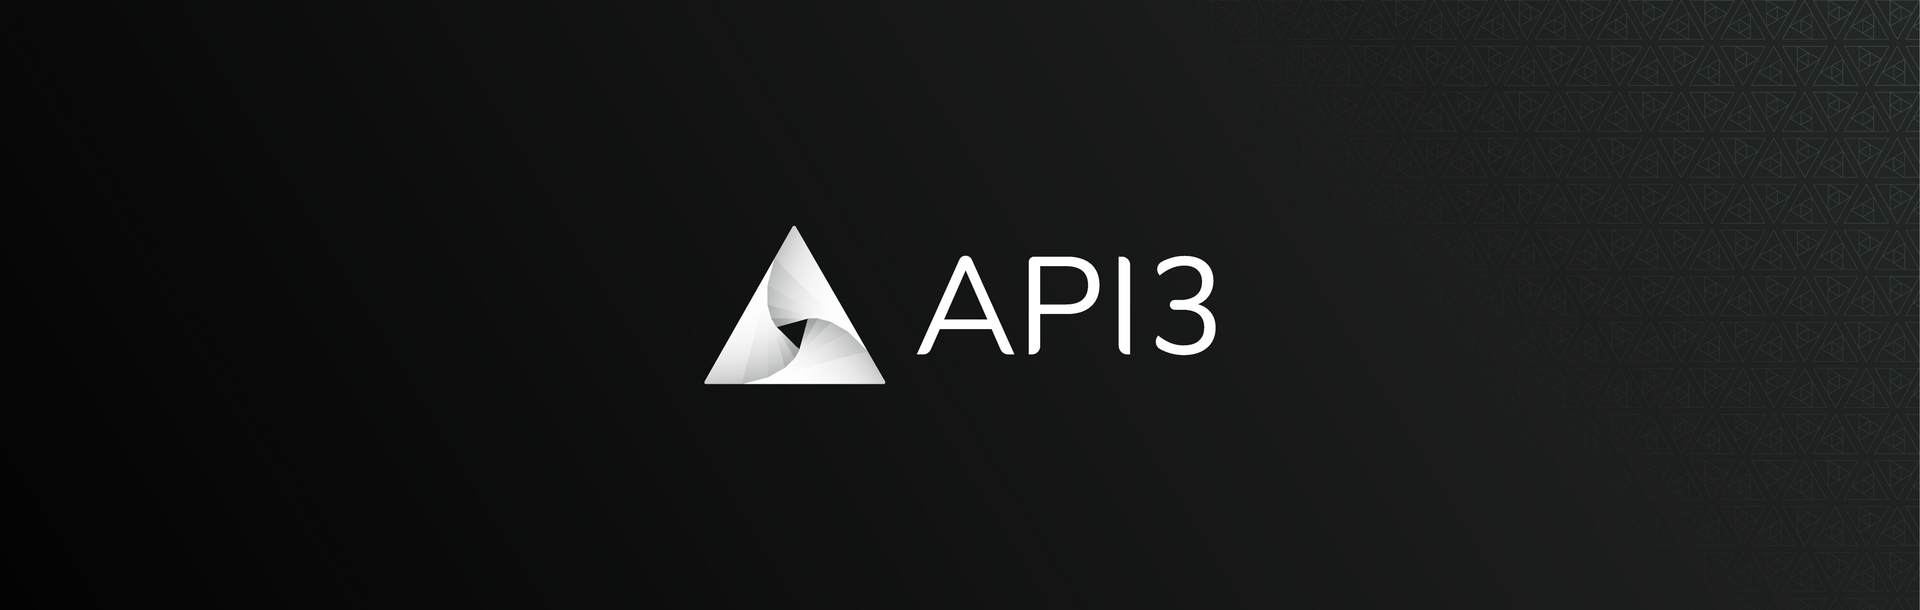 深入了解去中心化的API服务：API3插图